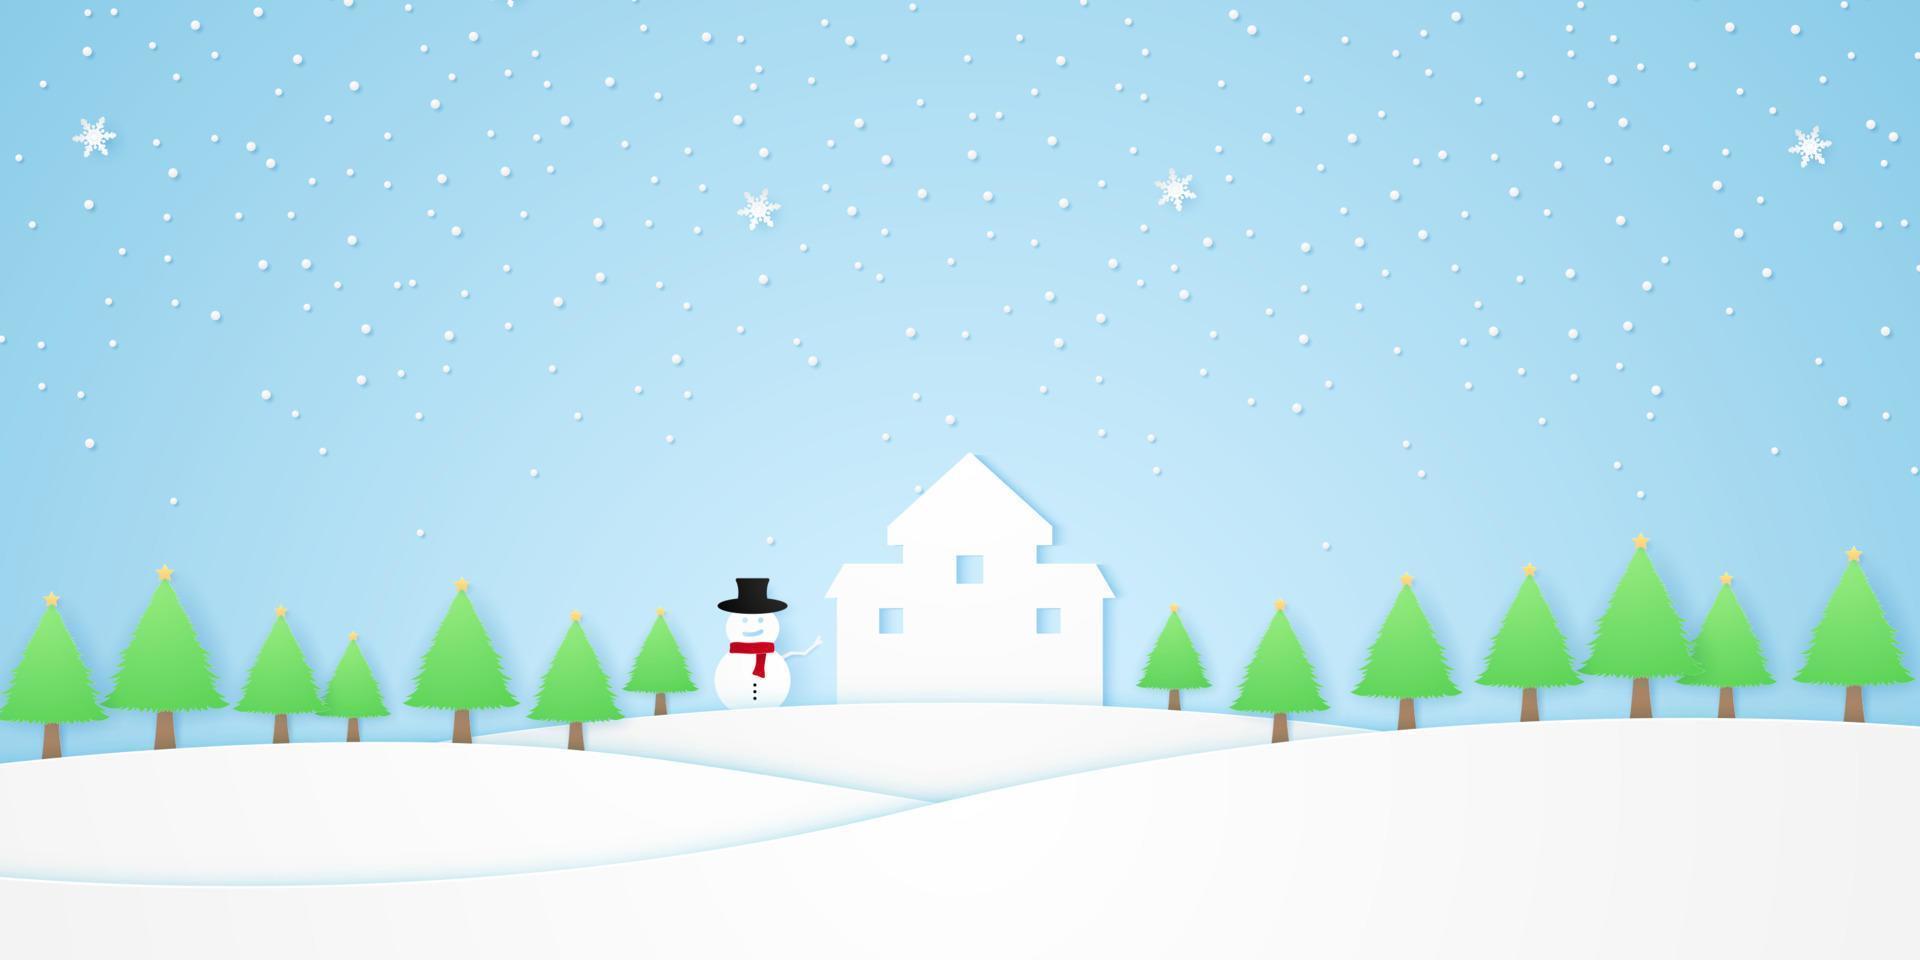 landschap, kasteel met sneeuwpop, bomen met ster en sneeuw die in het winterseizoen vallen, witte heuvel, papierkunststijl vector